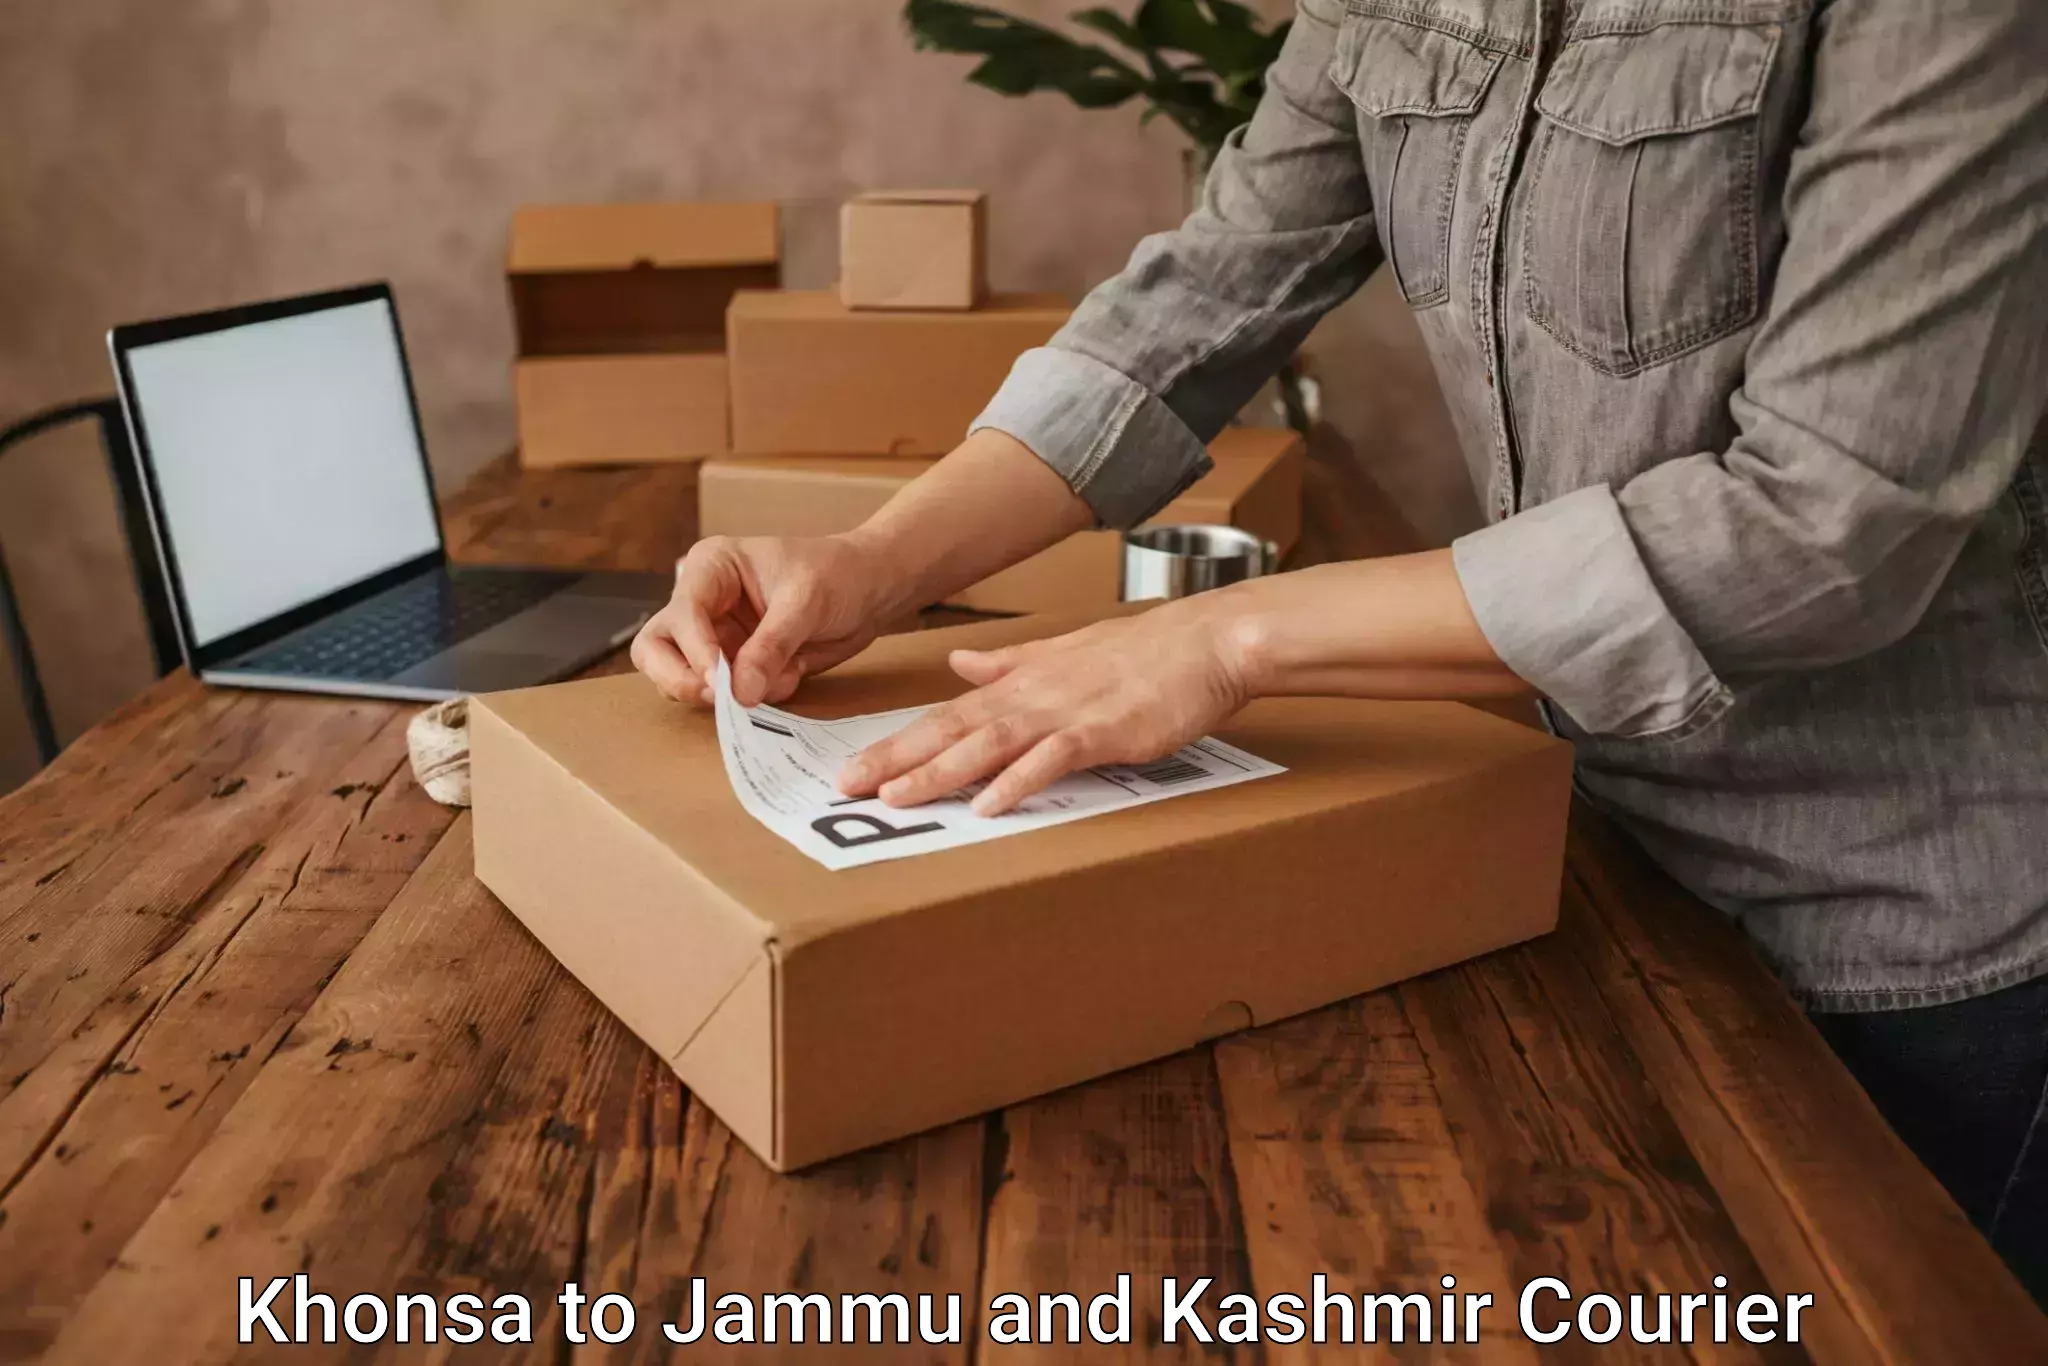 Modern courier technology Khonsa to Jammu